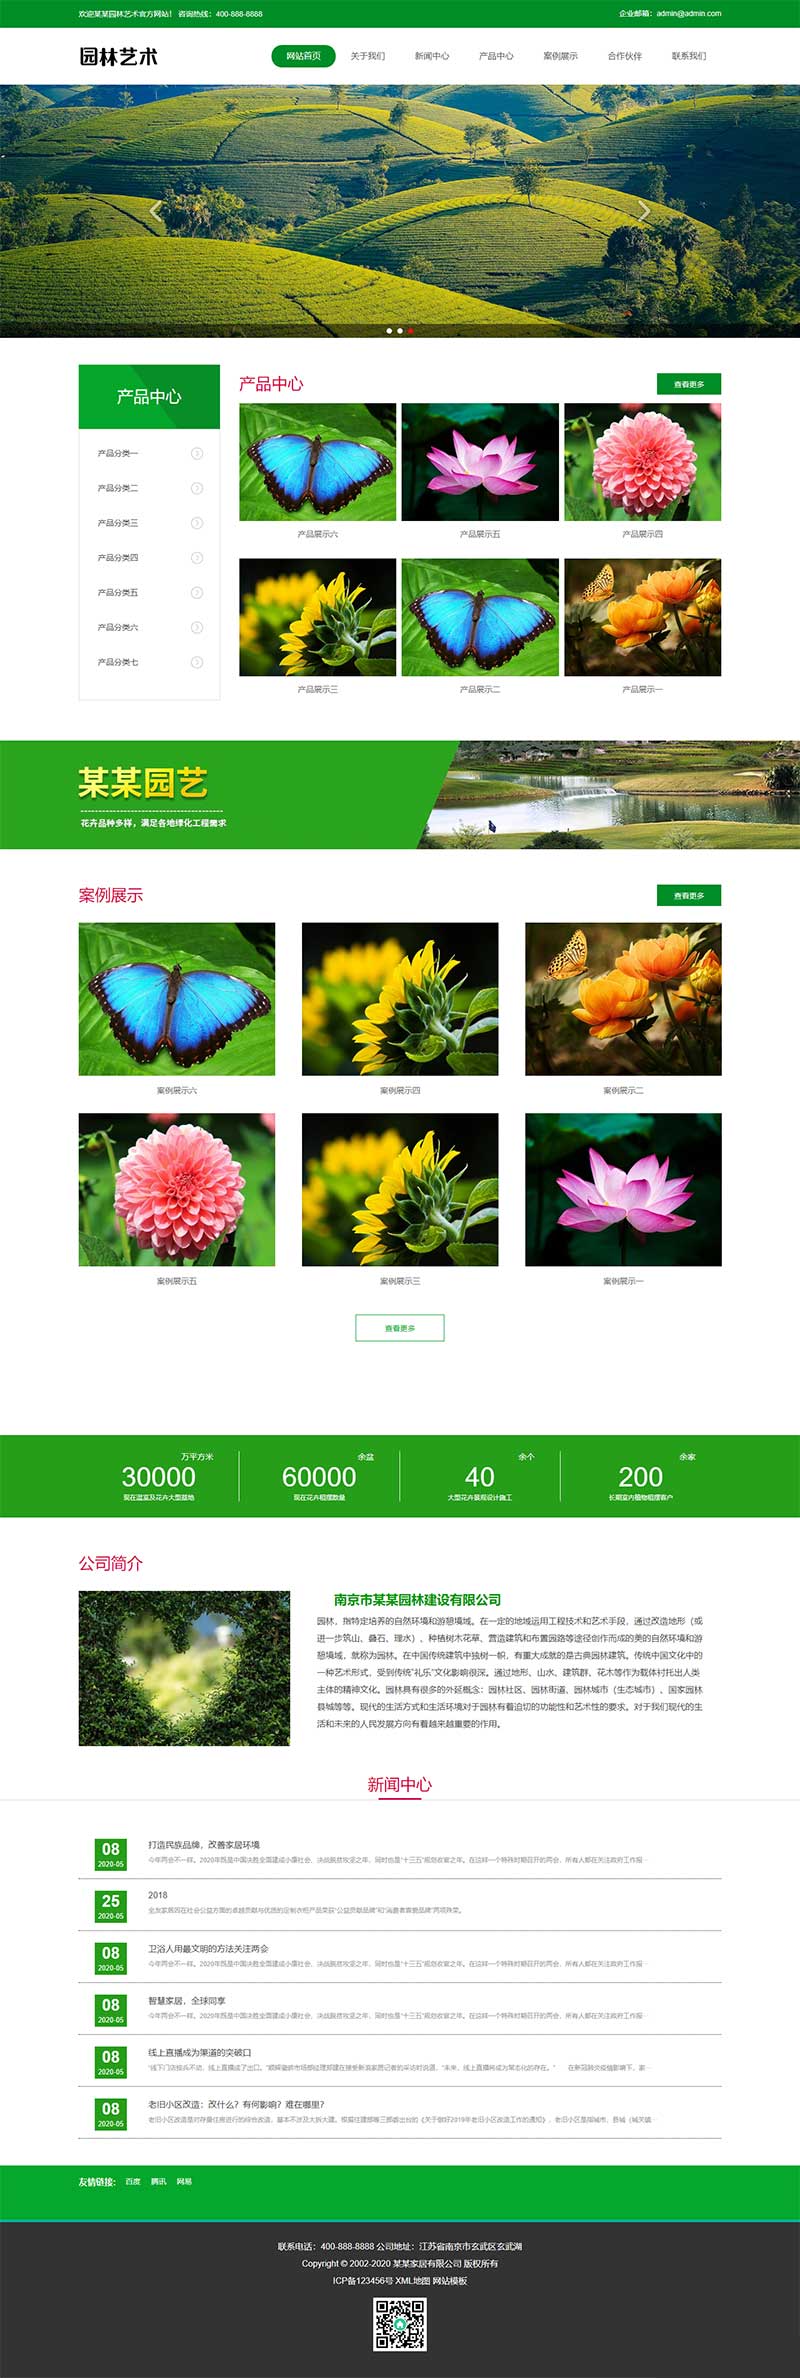 绿色园林建筑艺术网站模板 花卉园艺网站源码下载